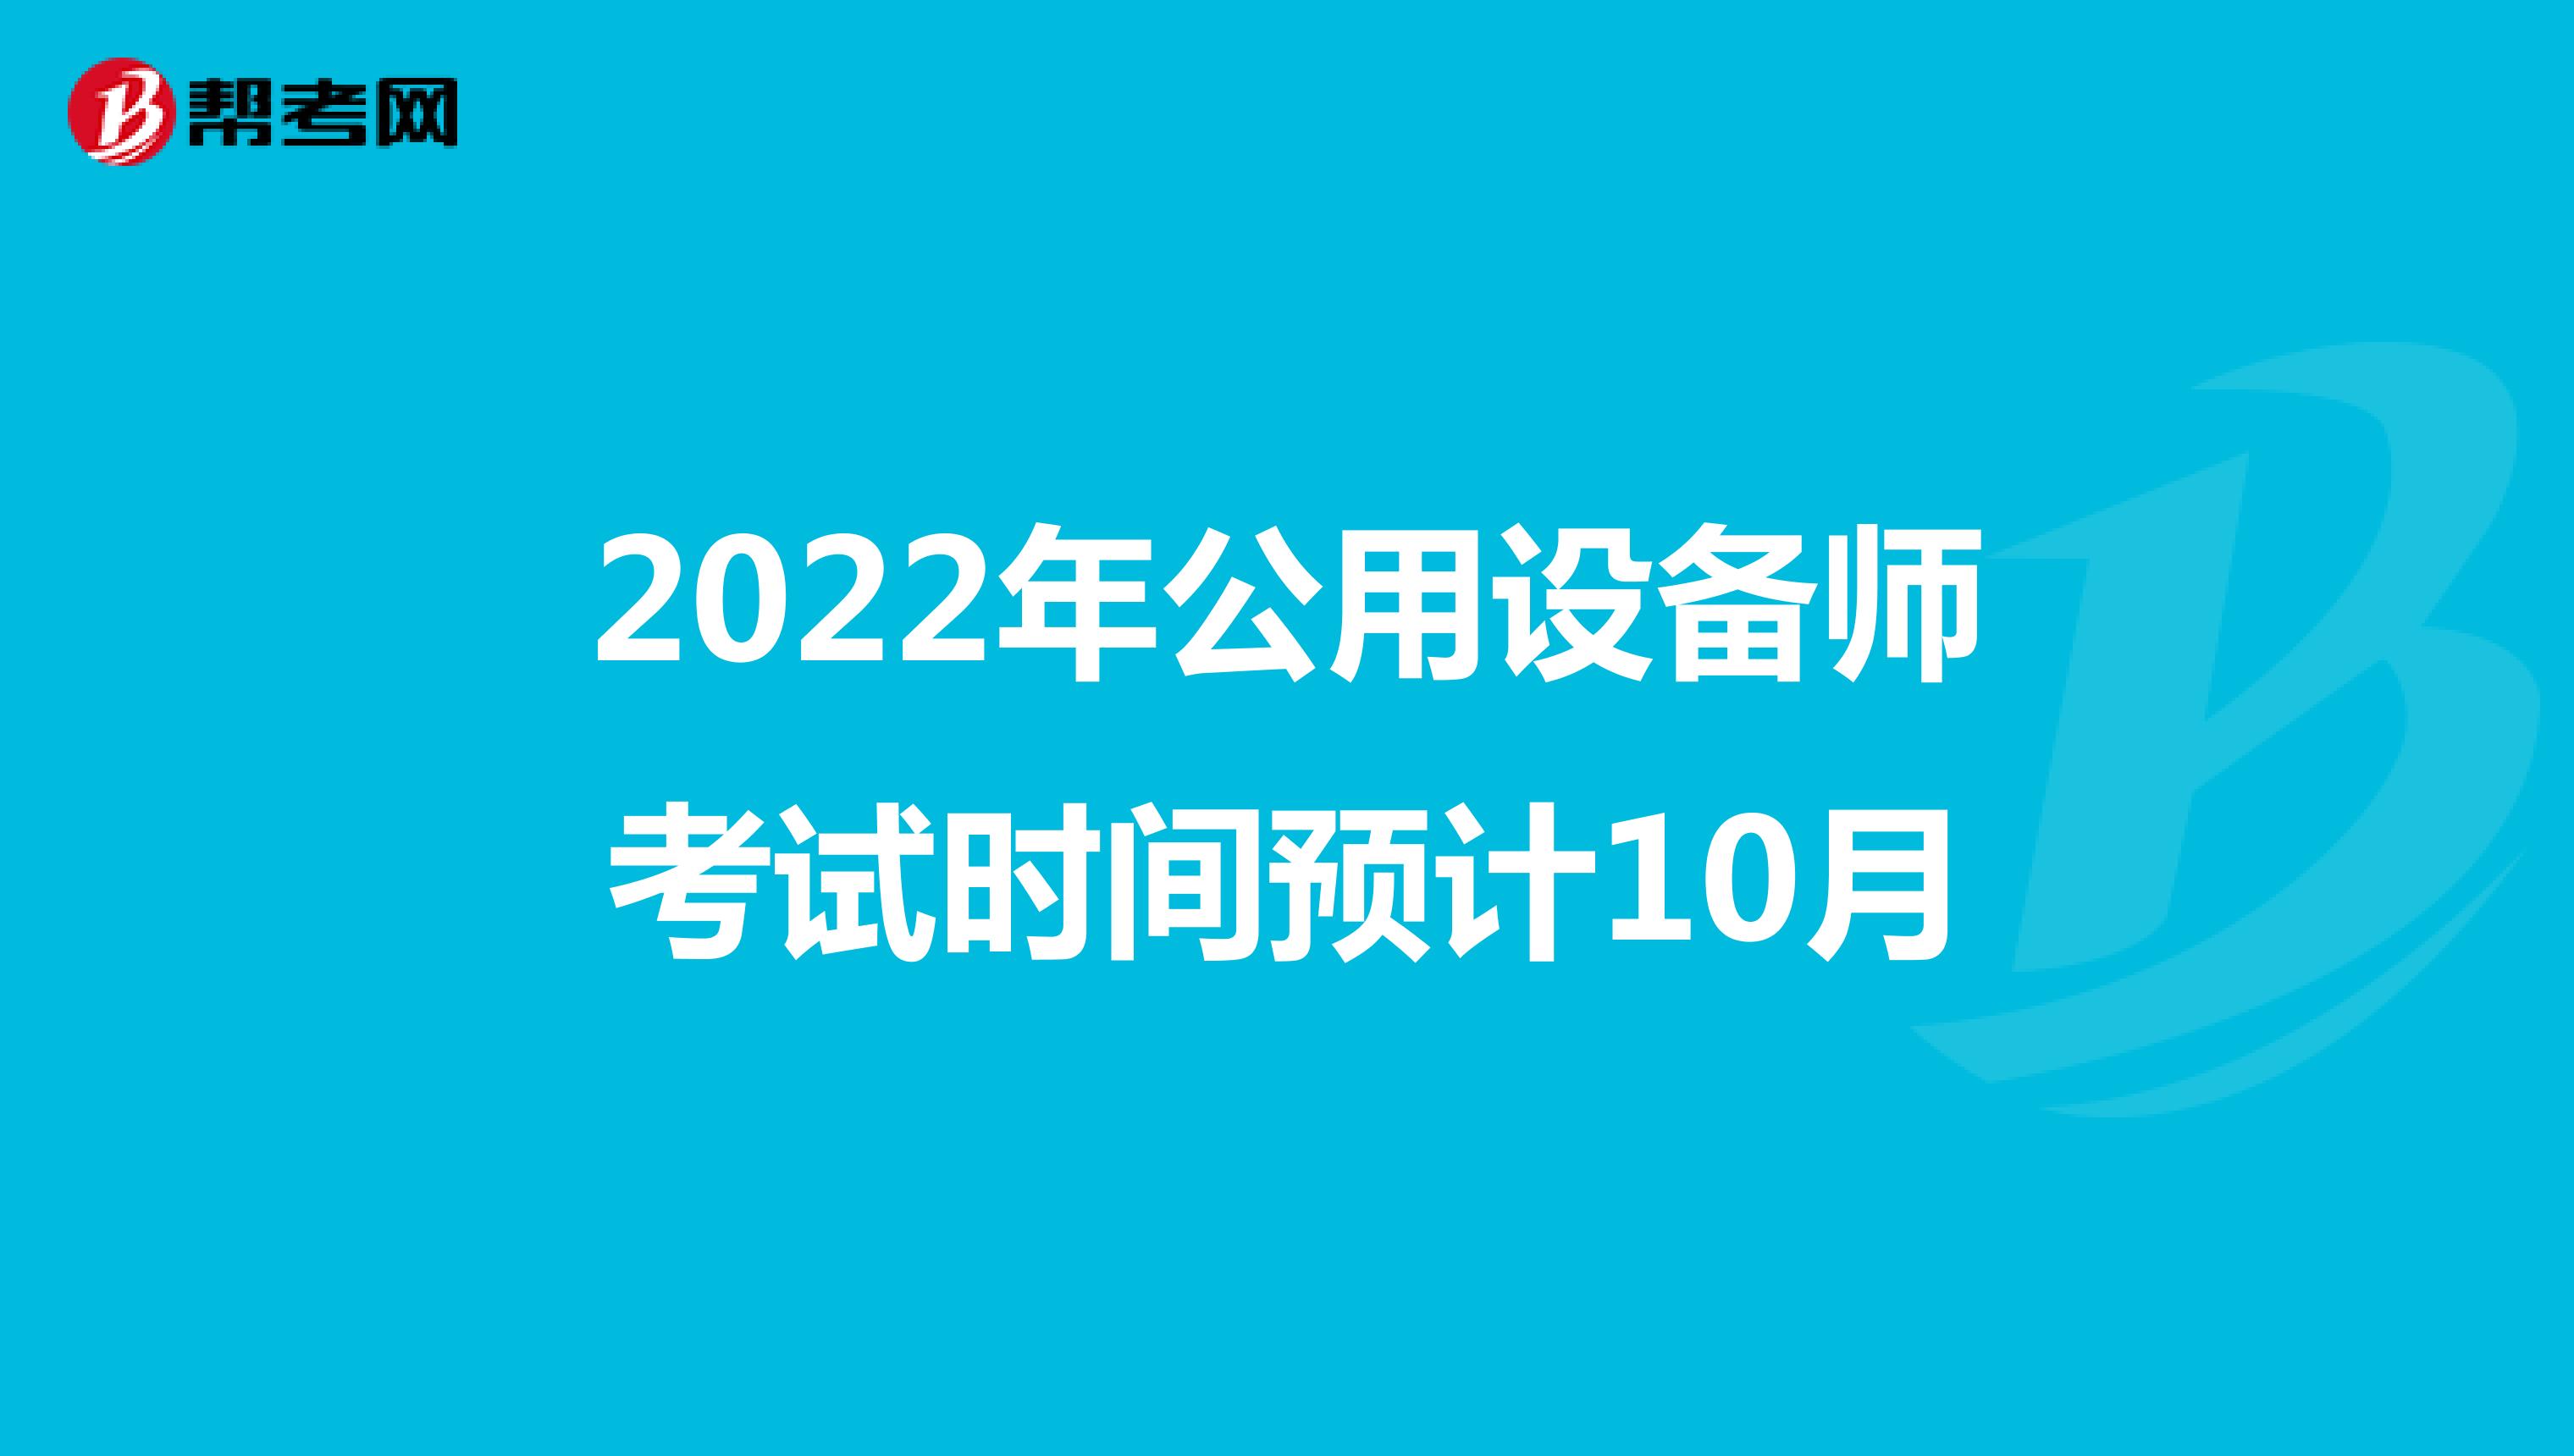 2022年公用设备师考试时间预计10月